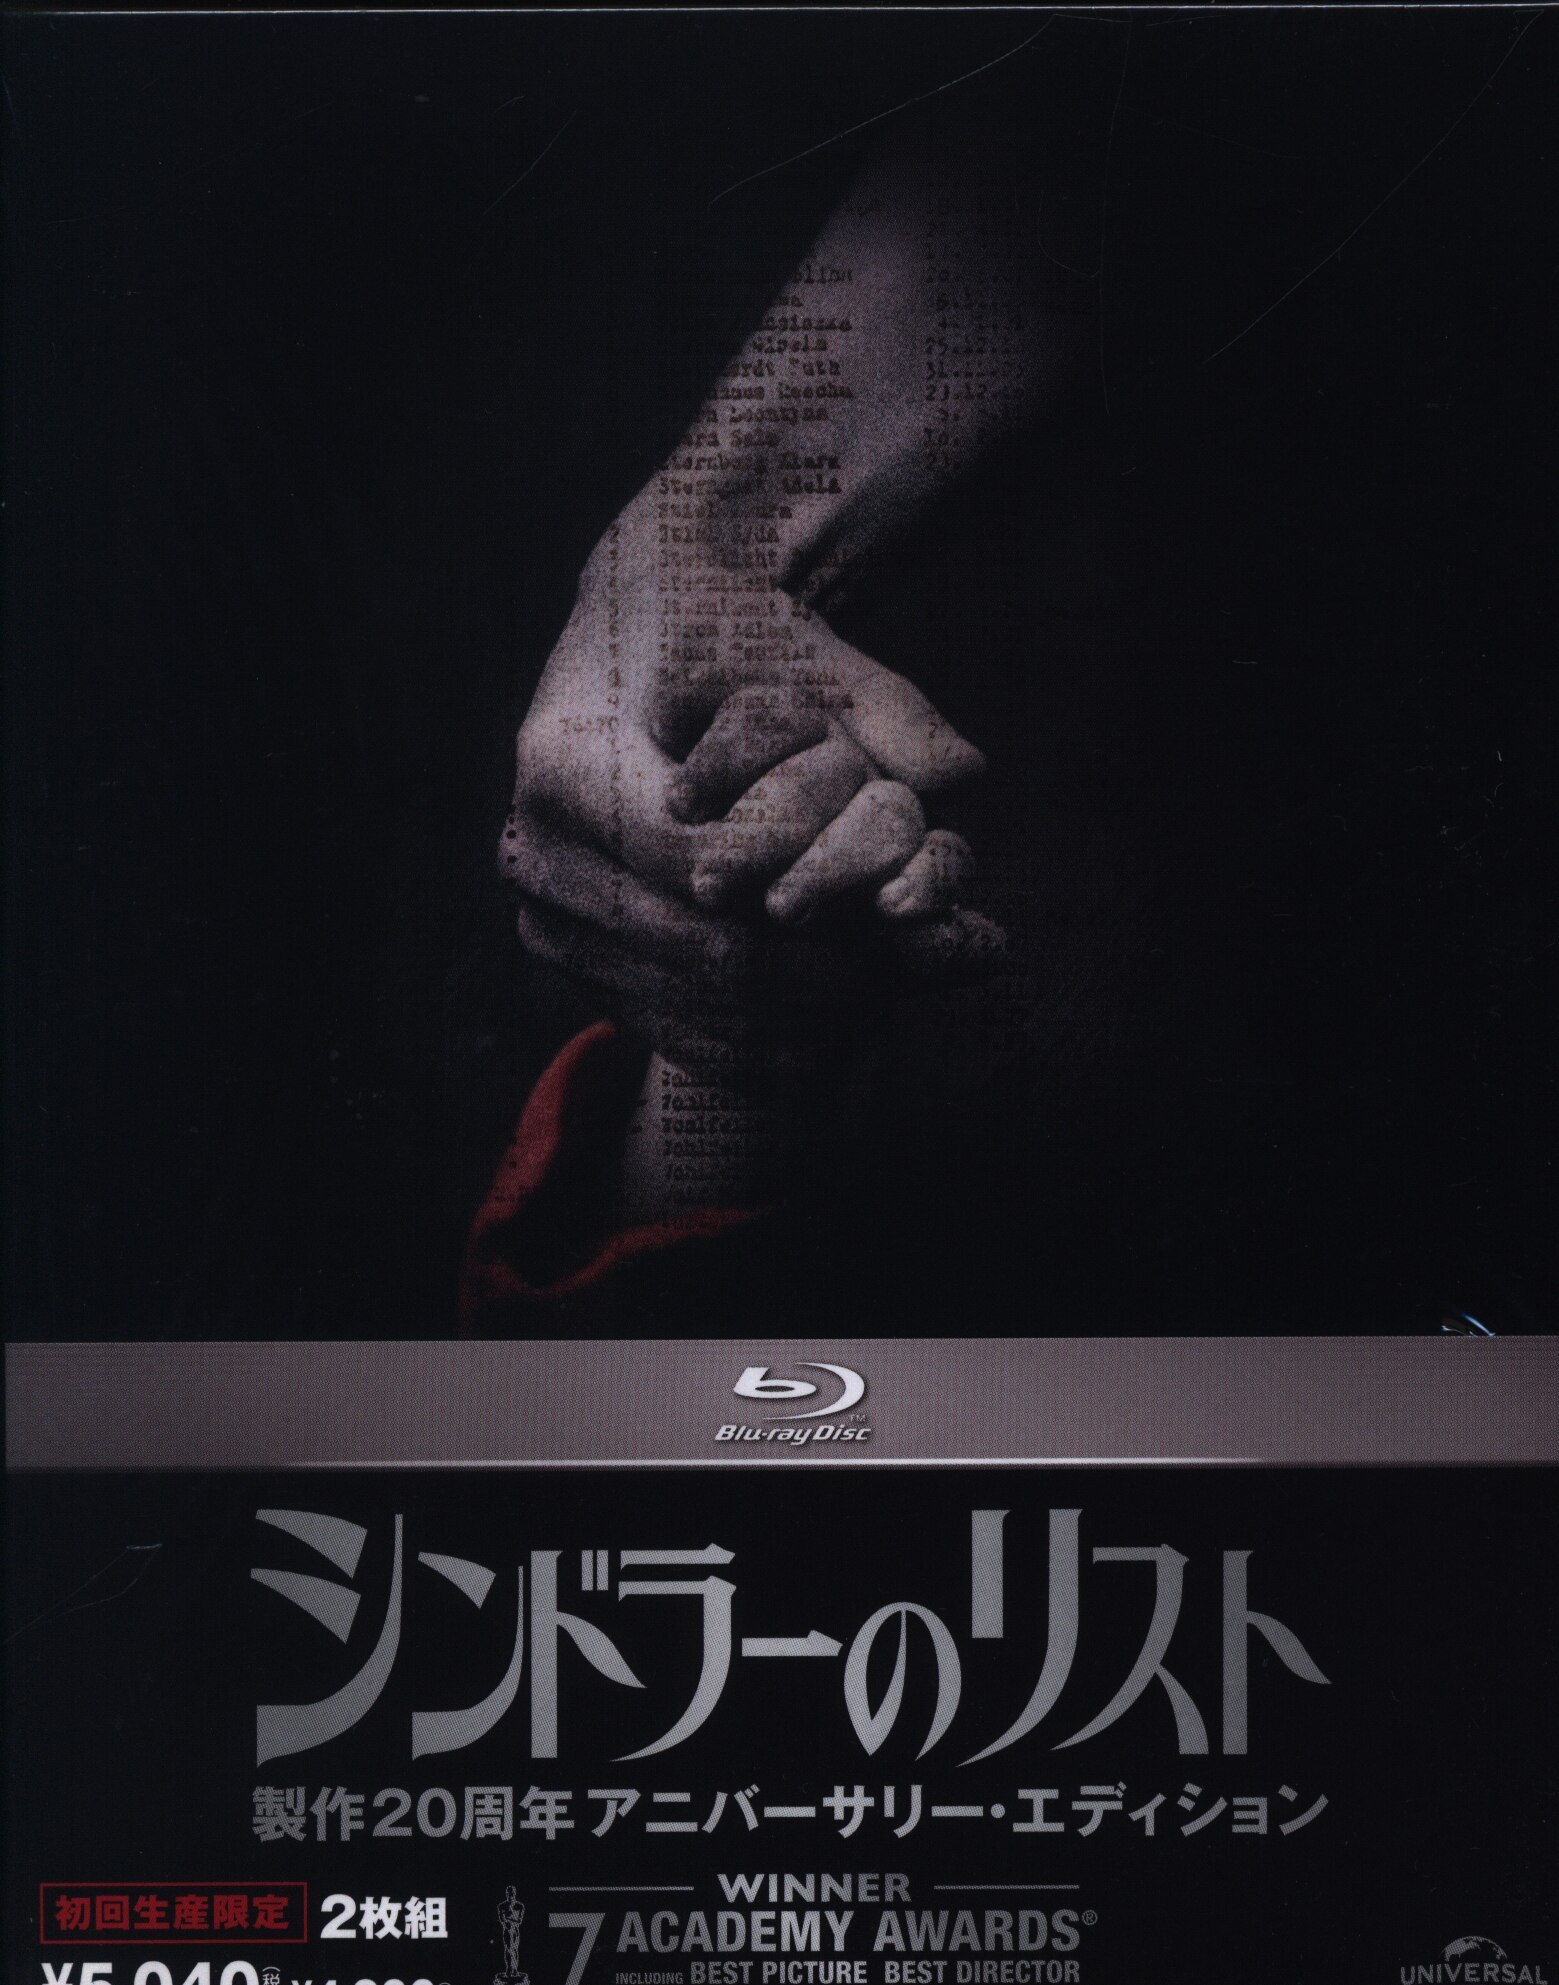 シンドラーのリスト 製作20周年アニバーサリー・エディション(初回生産限定) [Blu-ray] khxv5rg